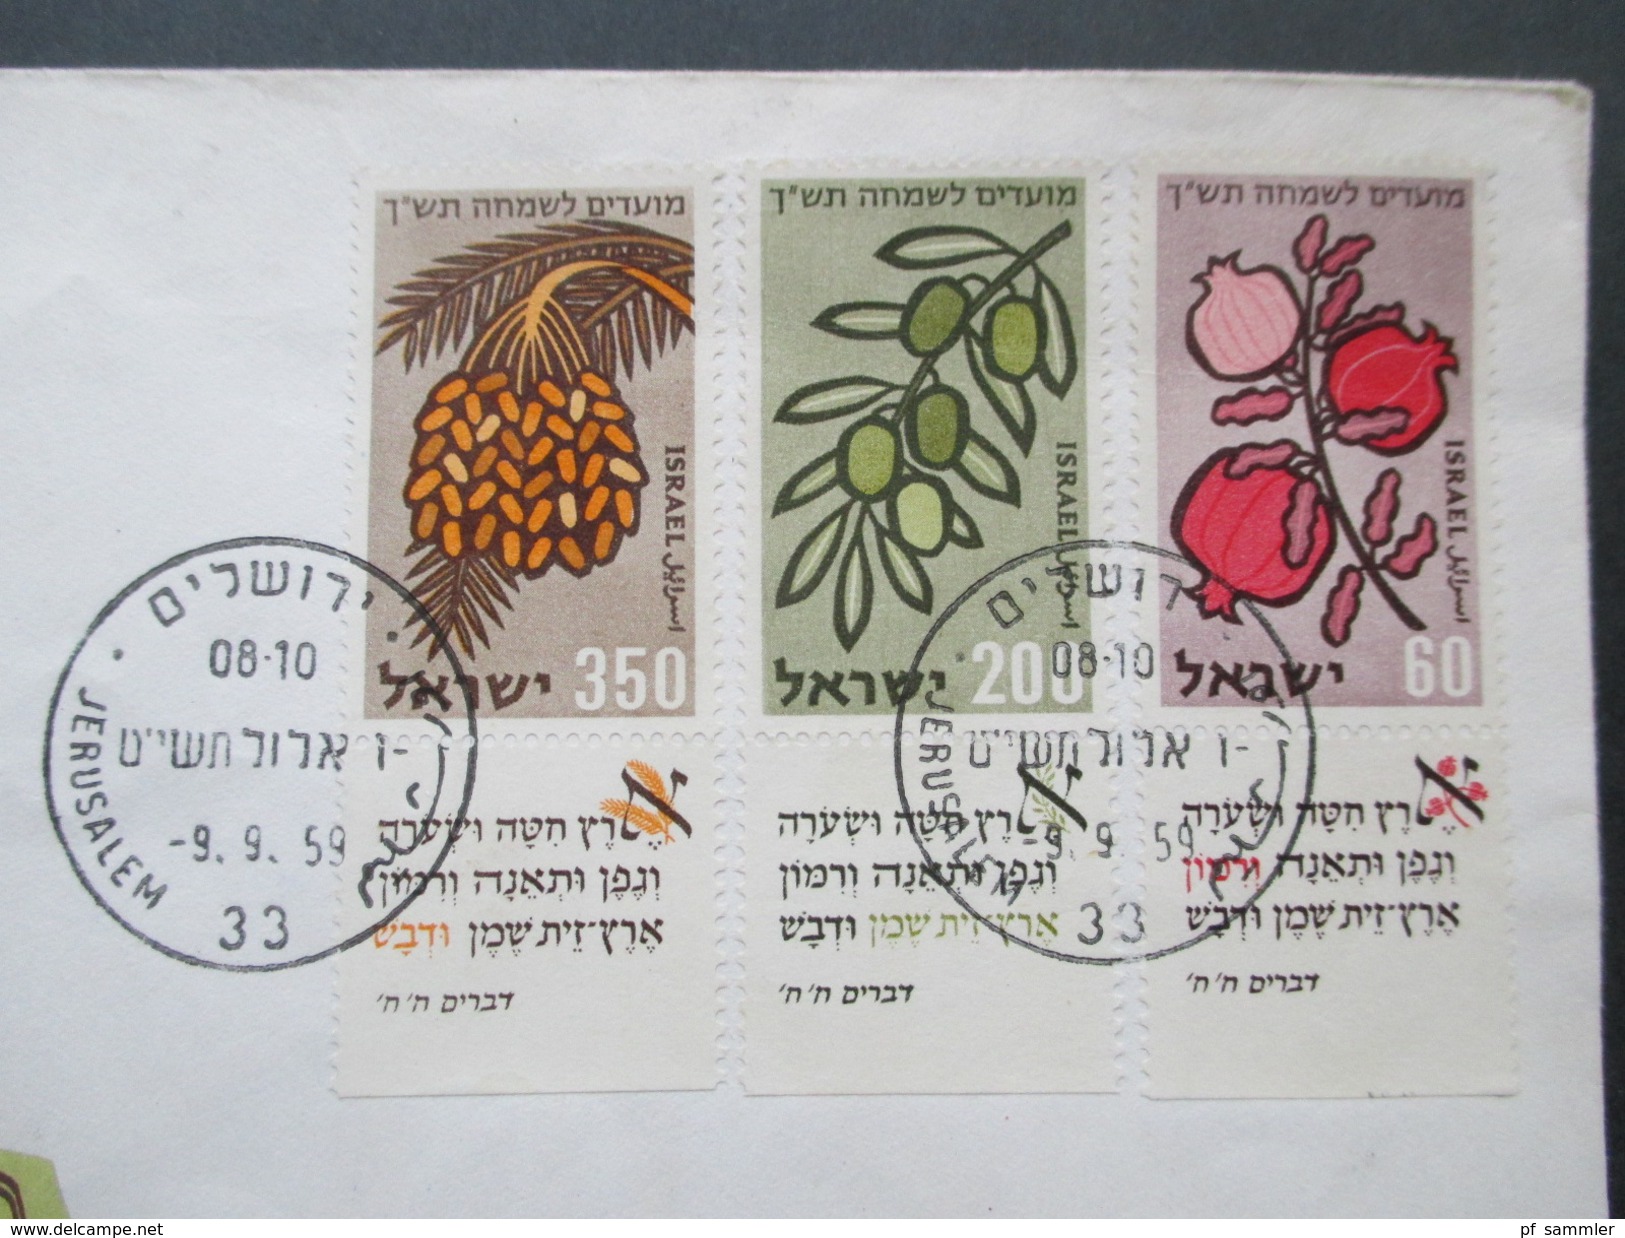 Israel / Holy Land 1940/50er Belegeposten 31 Stück! Judaika / Randstücke / Tab / FDC / Luftpost / Bogennummern usw.